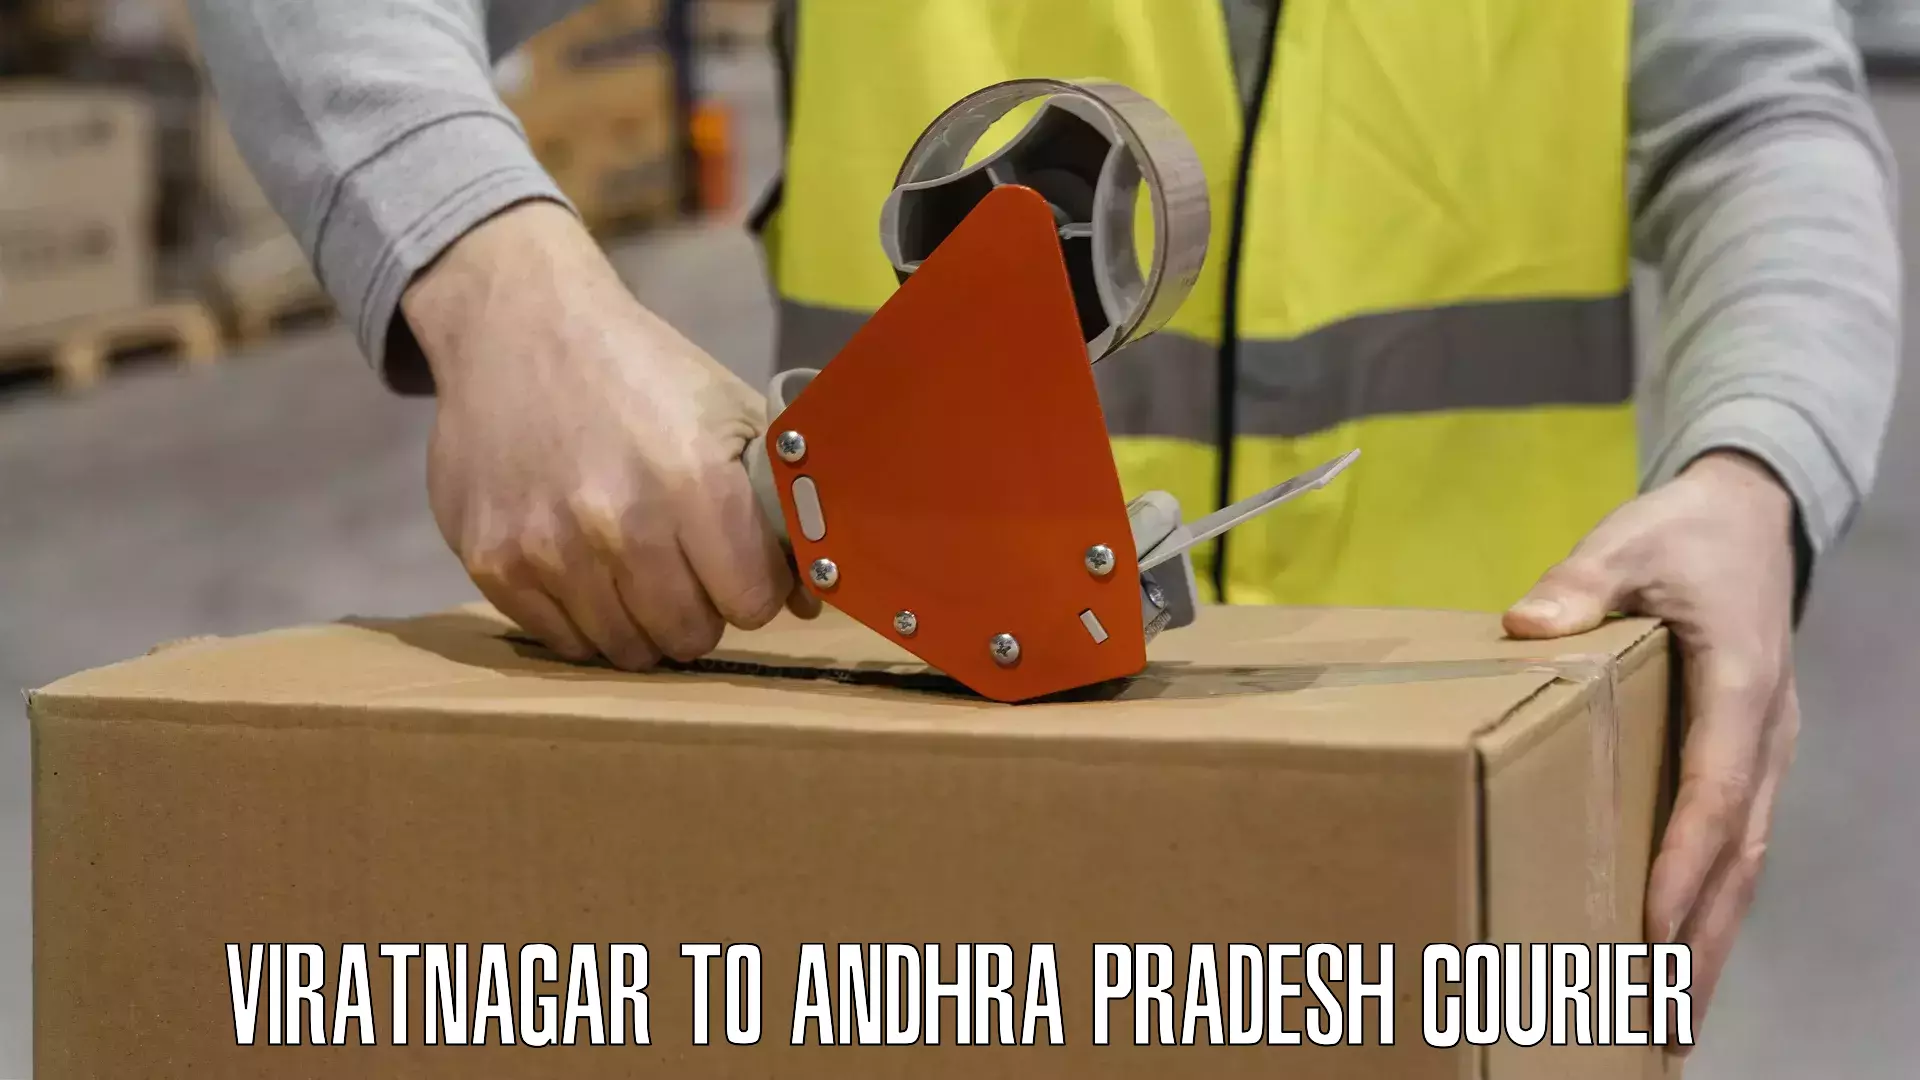 Versatile courier offerings Viratnagar to Parchoor